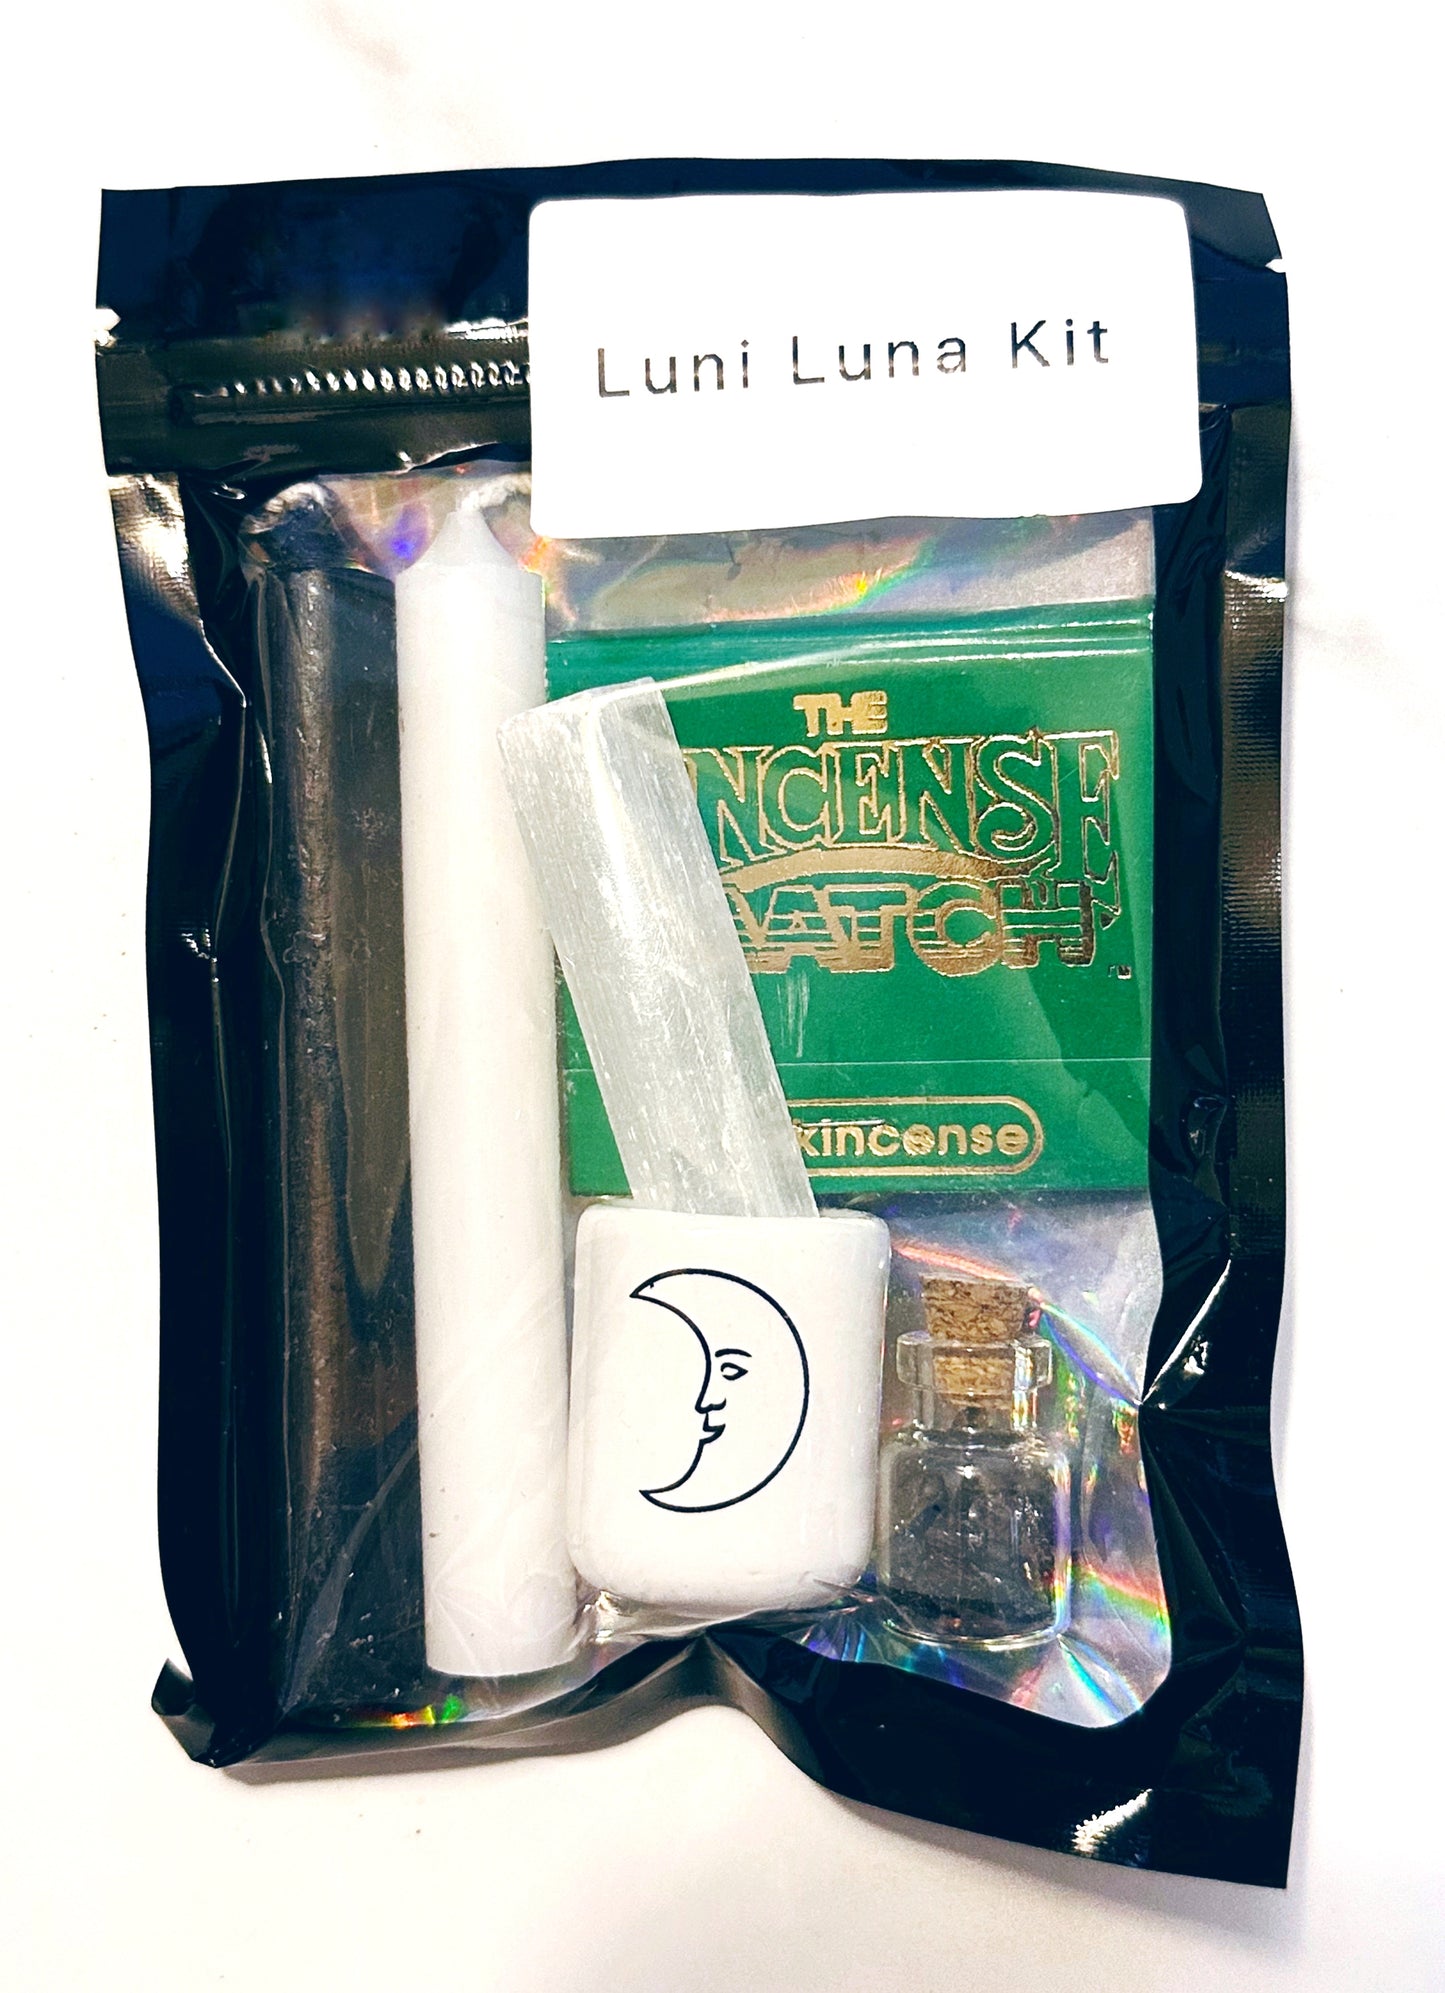 Luni Luna Kit